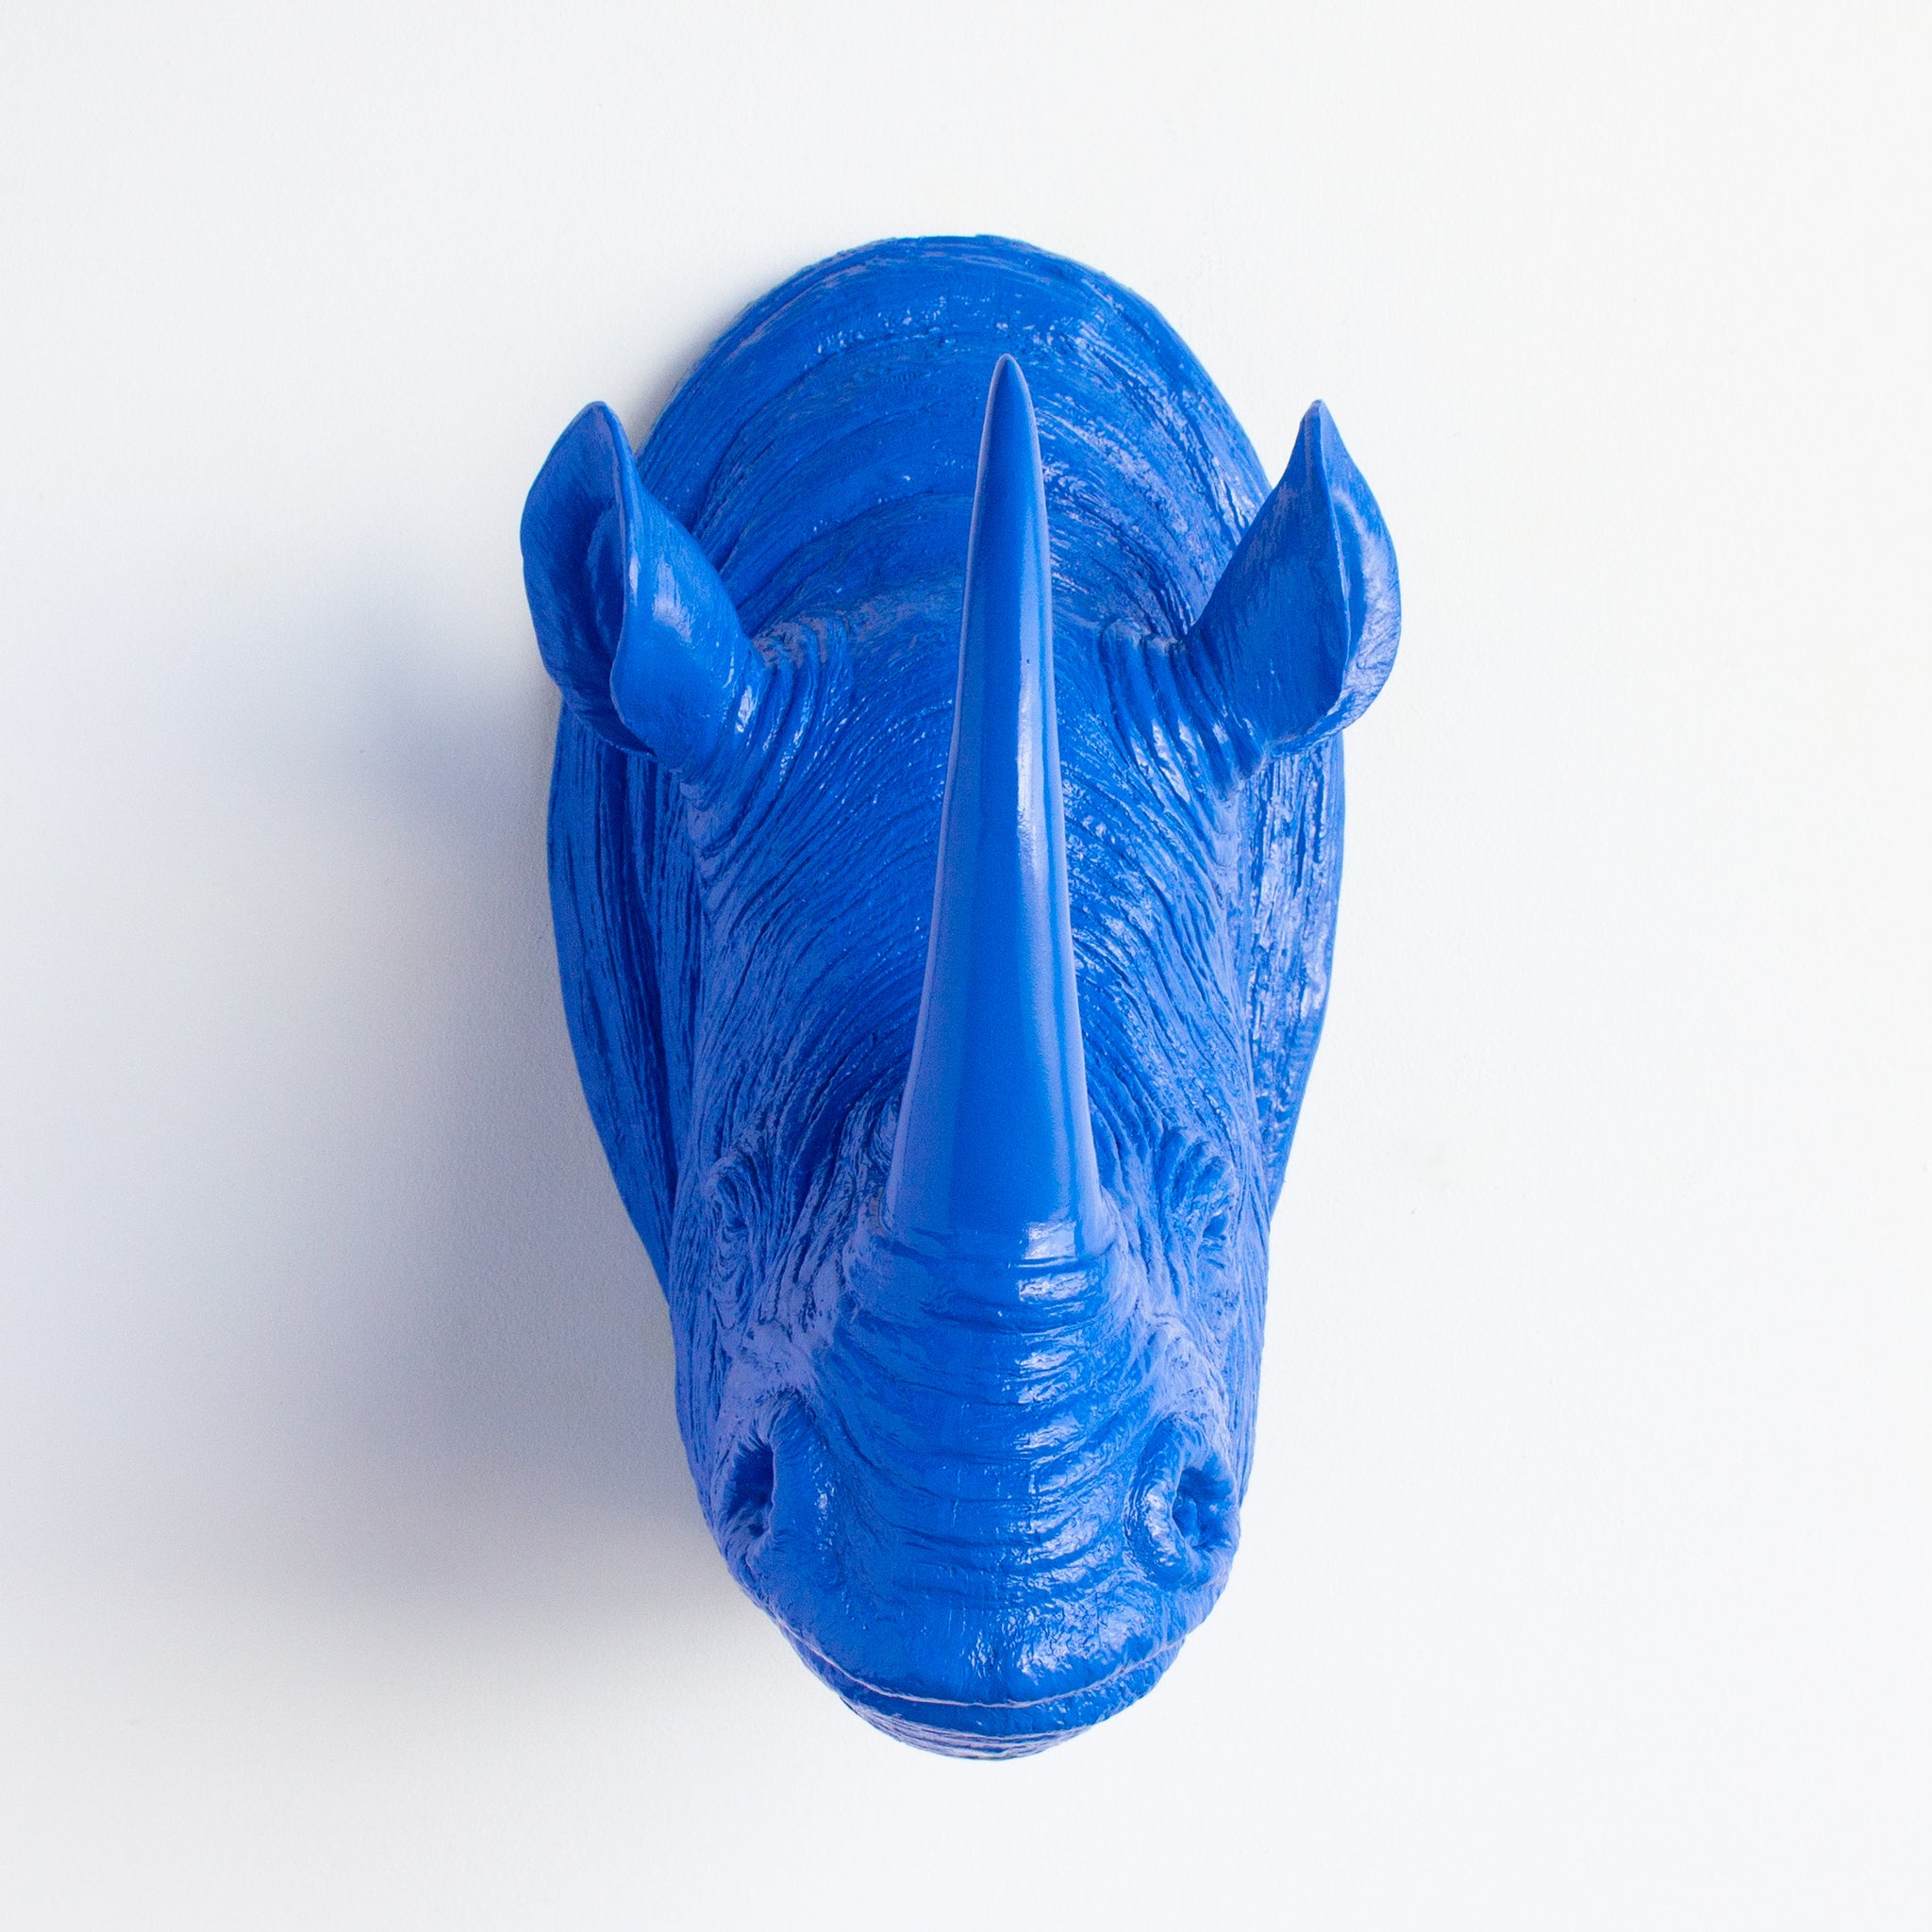 Faux Rhino Head Wall Mount // True Blue